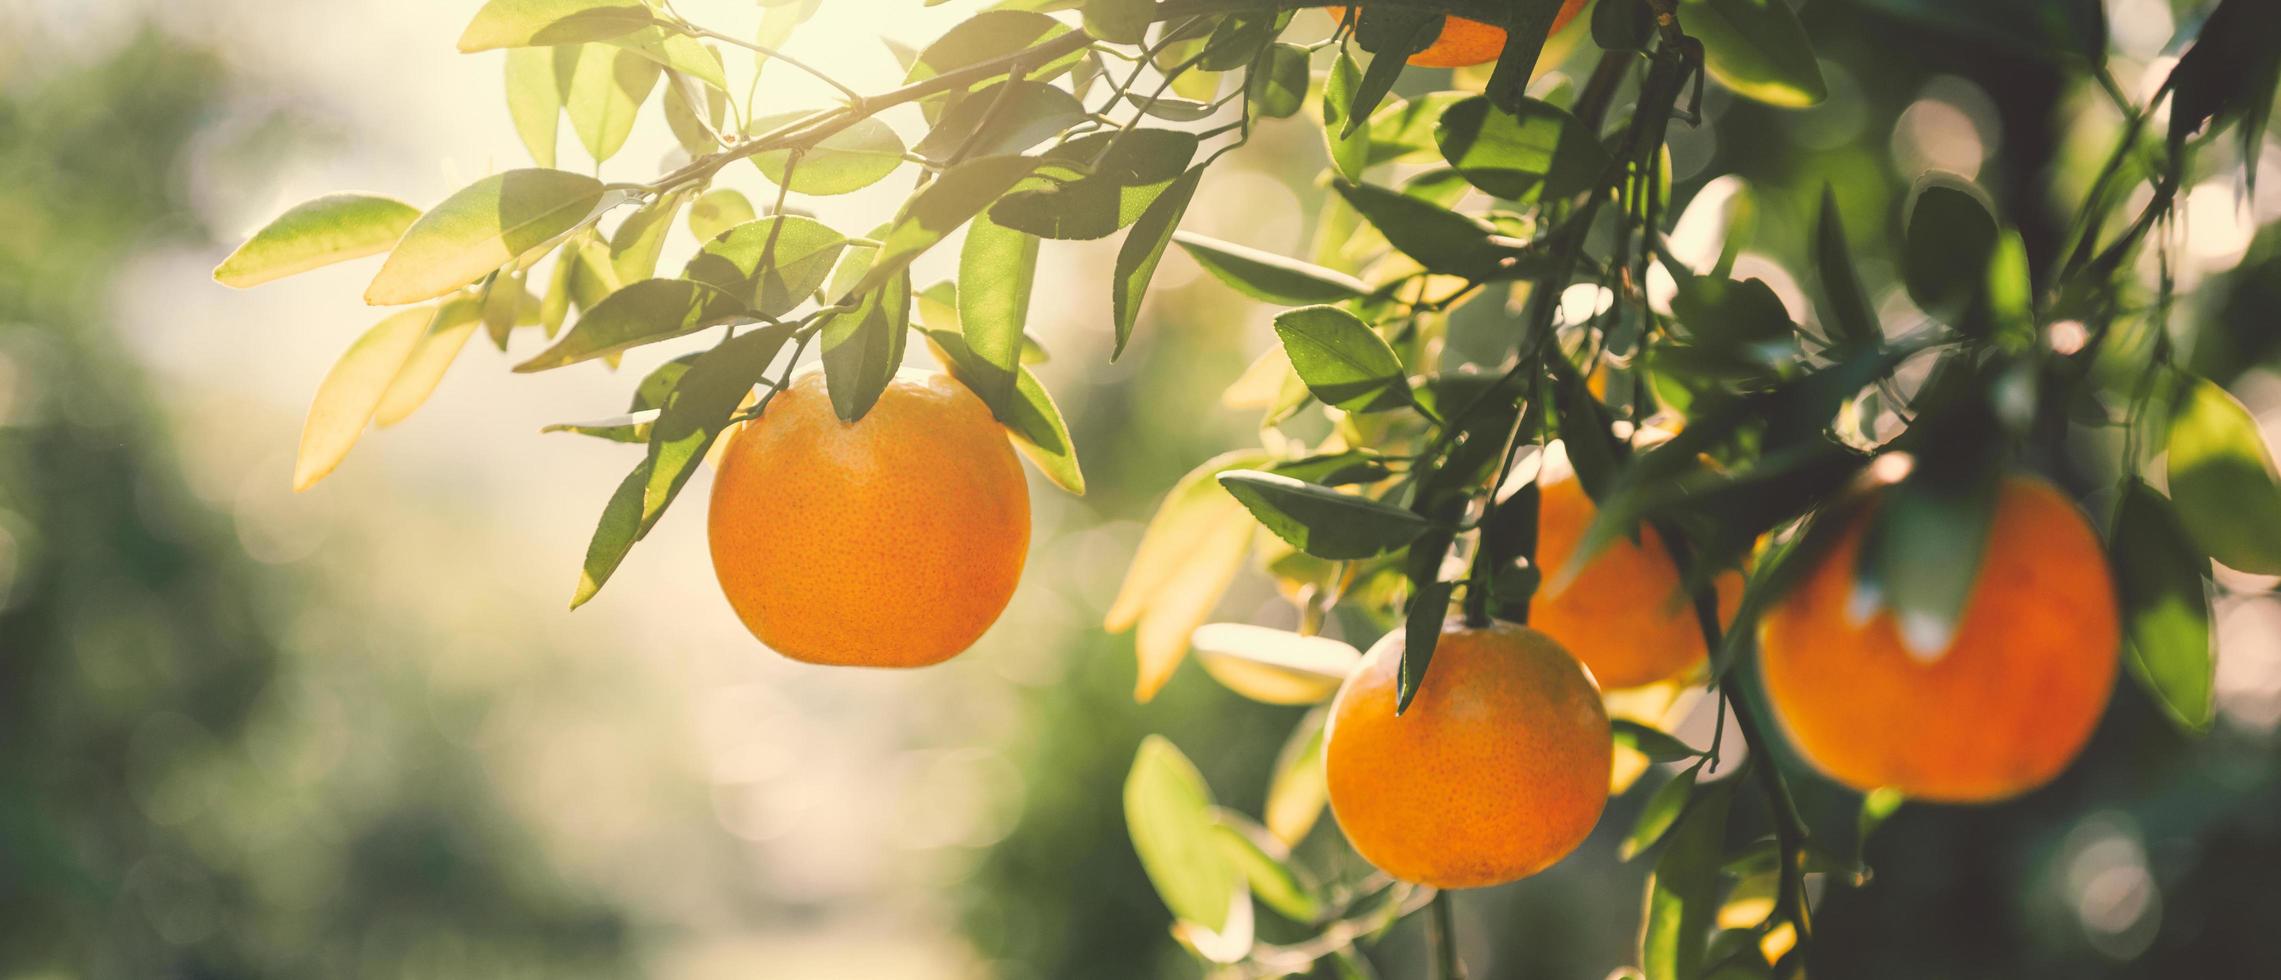 Frais des oranges sur arbre dans ferme cette sont à propos à récolte avec ensoleillement photo